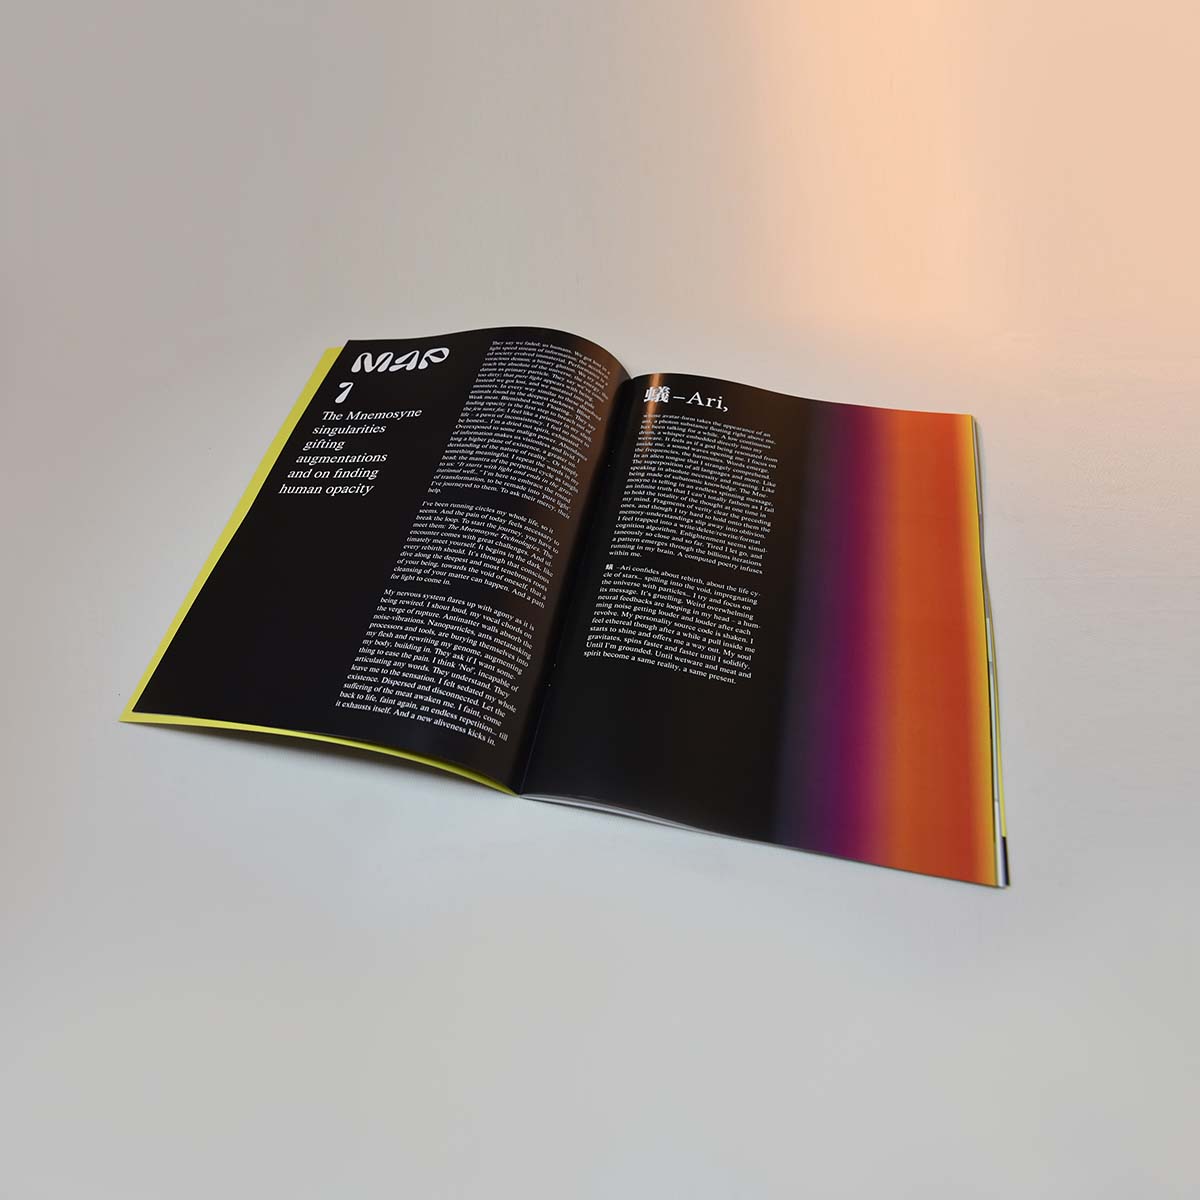 Celestial Reactors book, text by Johan Delétang, graphics alpha_rats